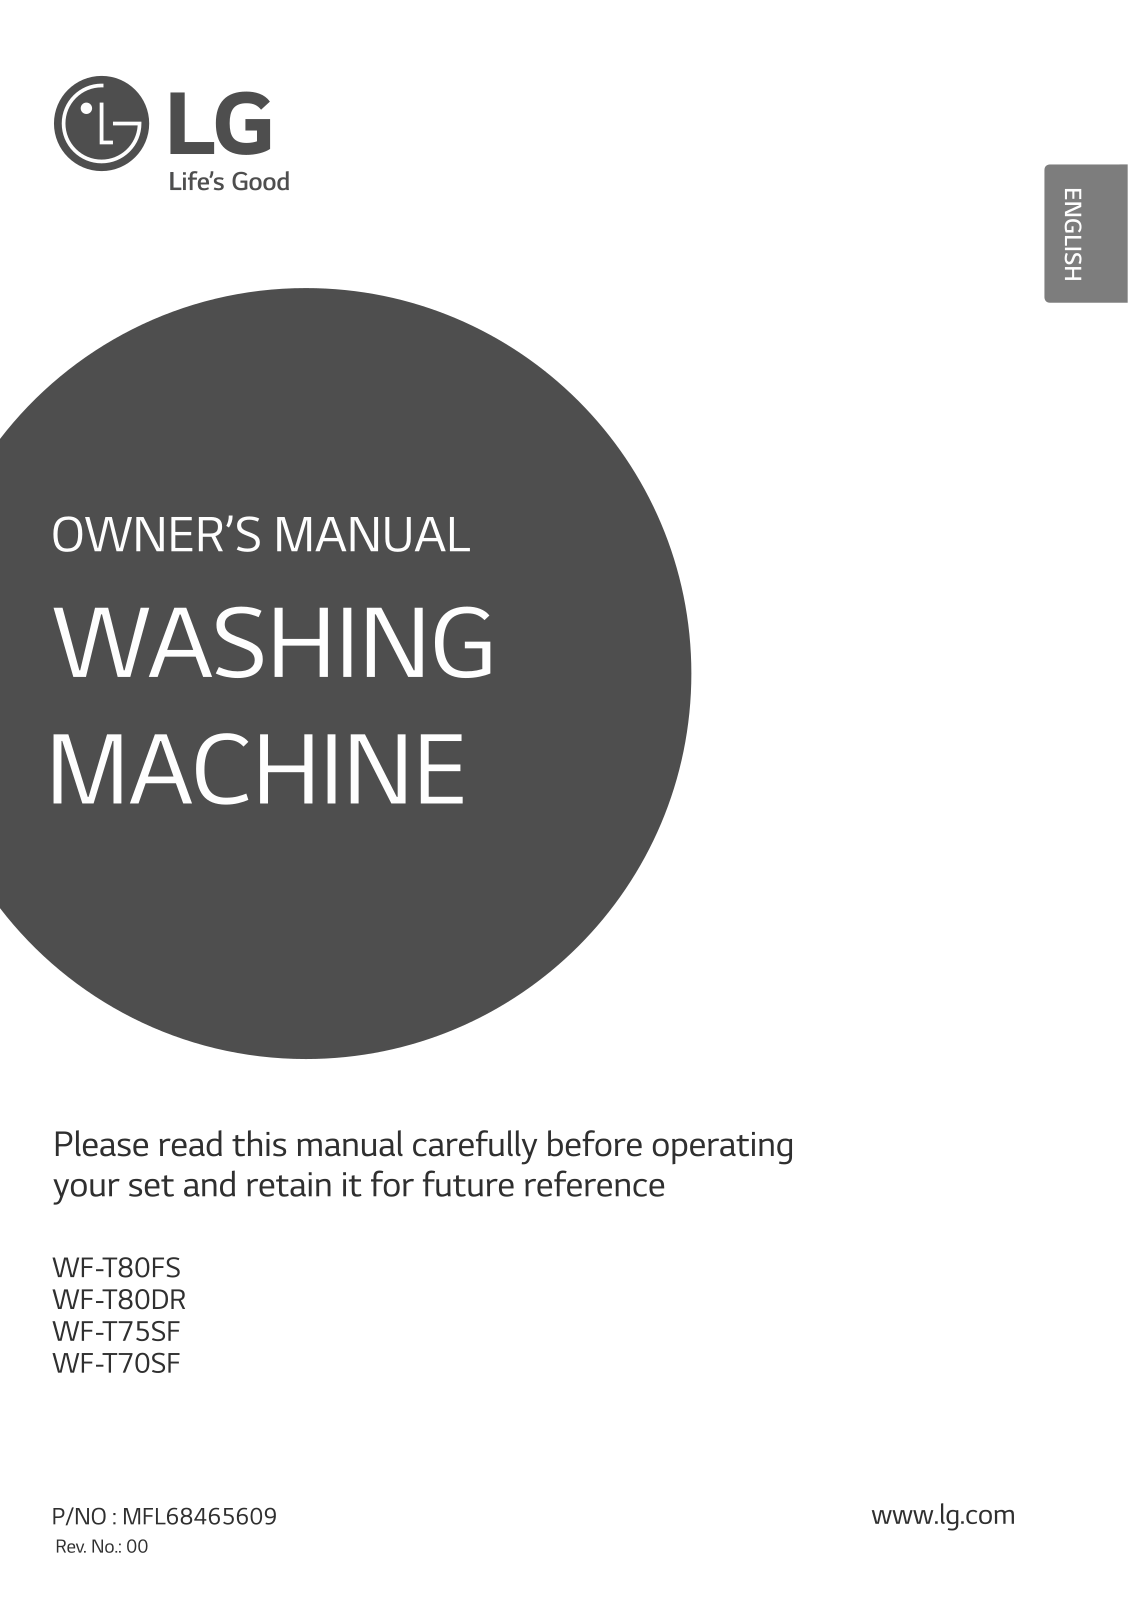 LG WF-T70SF Owner’s Manual